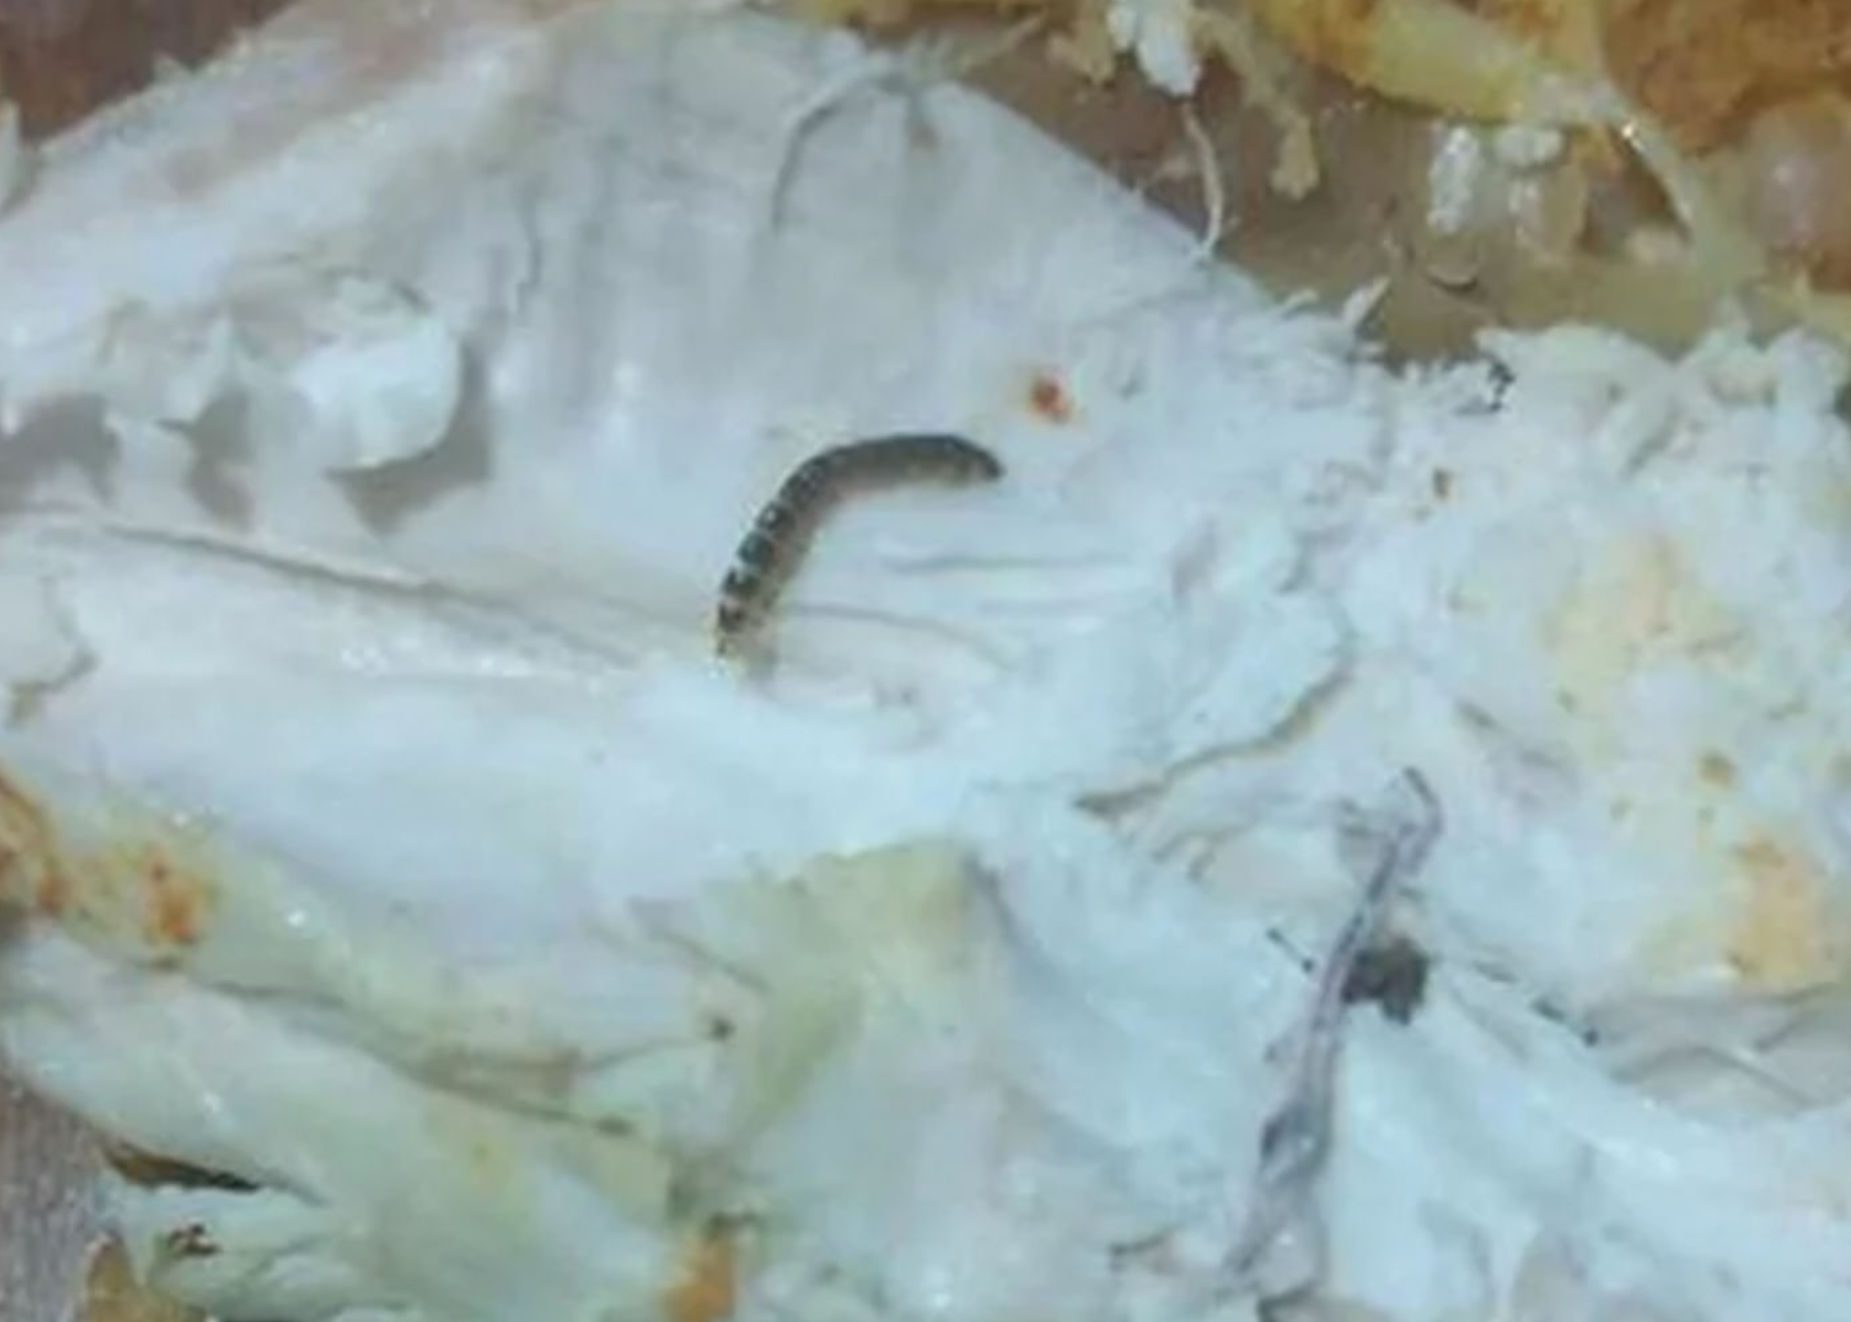 Σοκ και αηδία: Βρήκε σκουλήκια μέσα στο κοτόπουλο που αγόρασε από σούπερ μάρκετ